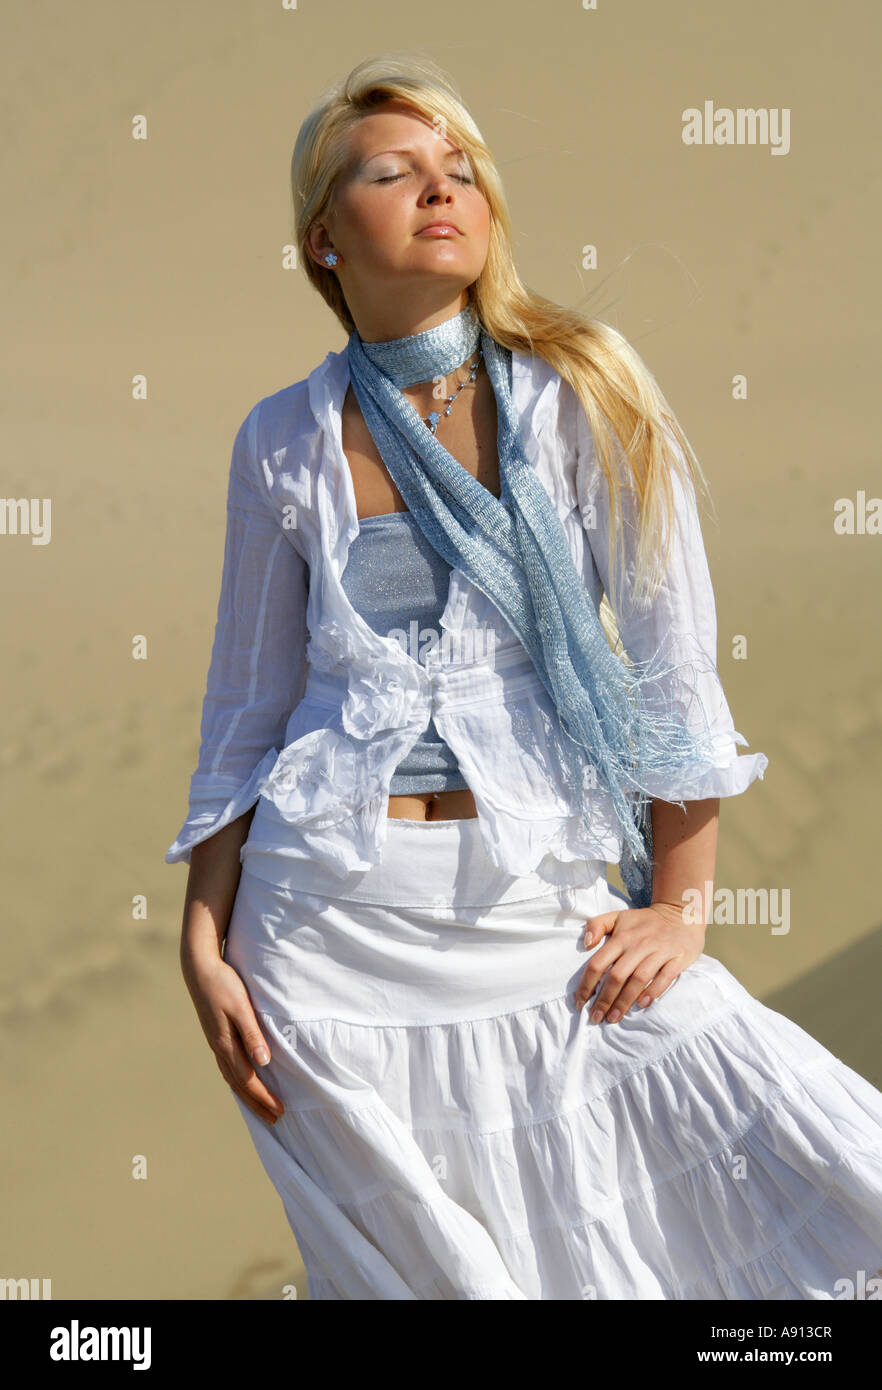 Blonde Mädchen mit blauen Top und weißen Hemd und Rock gegen Sanddünen Stockfoto